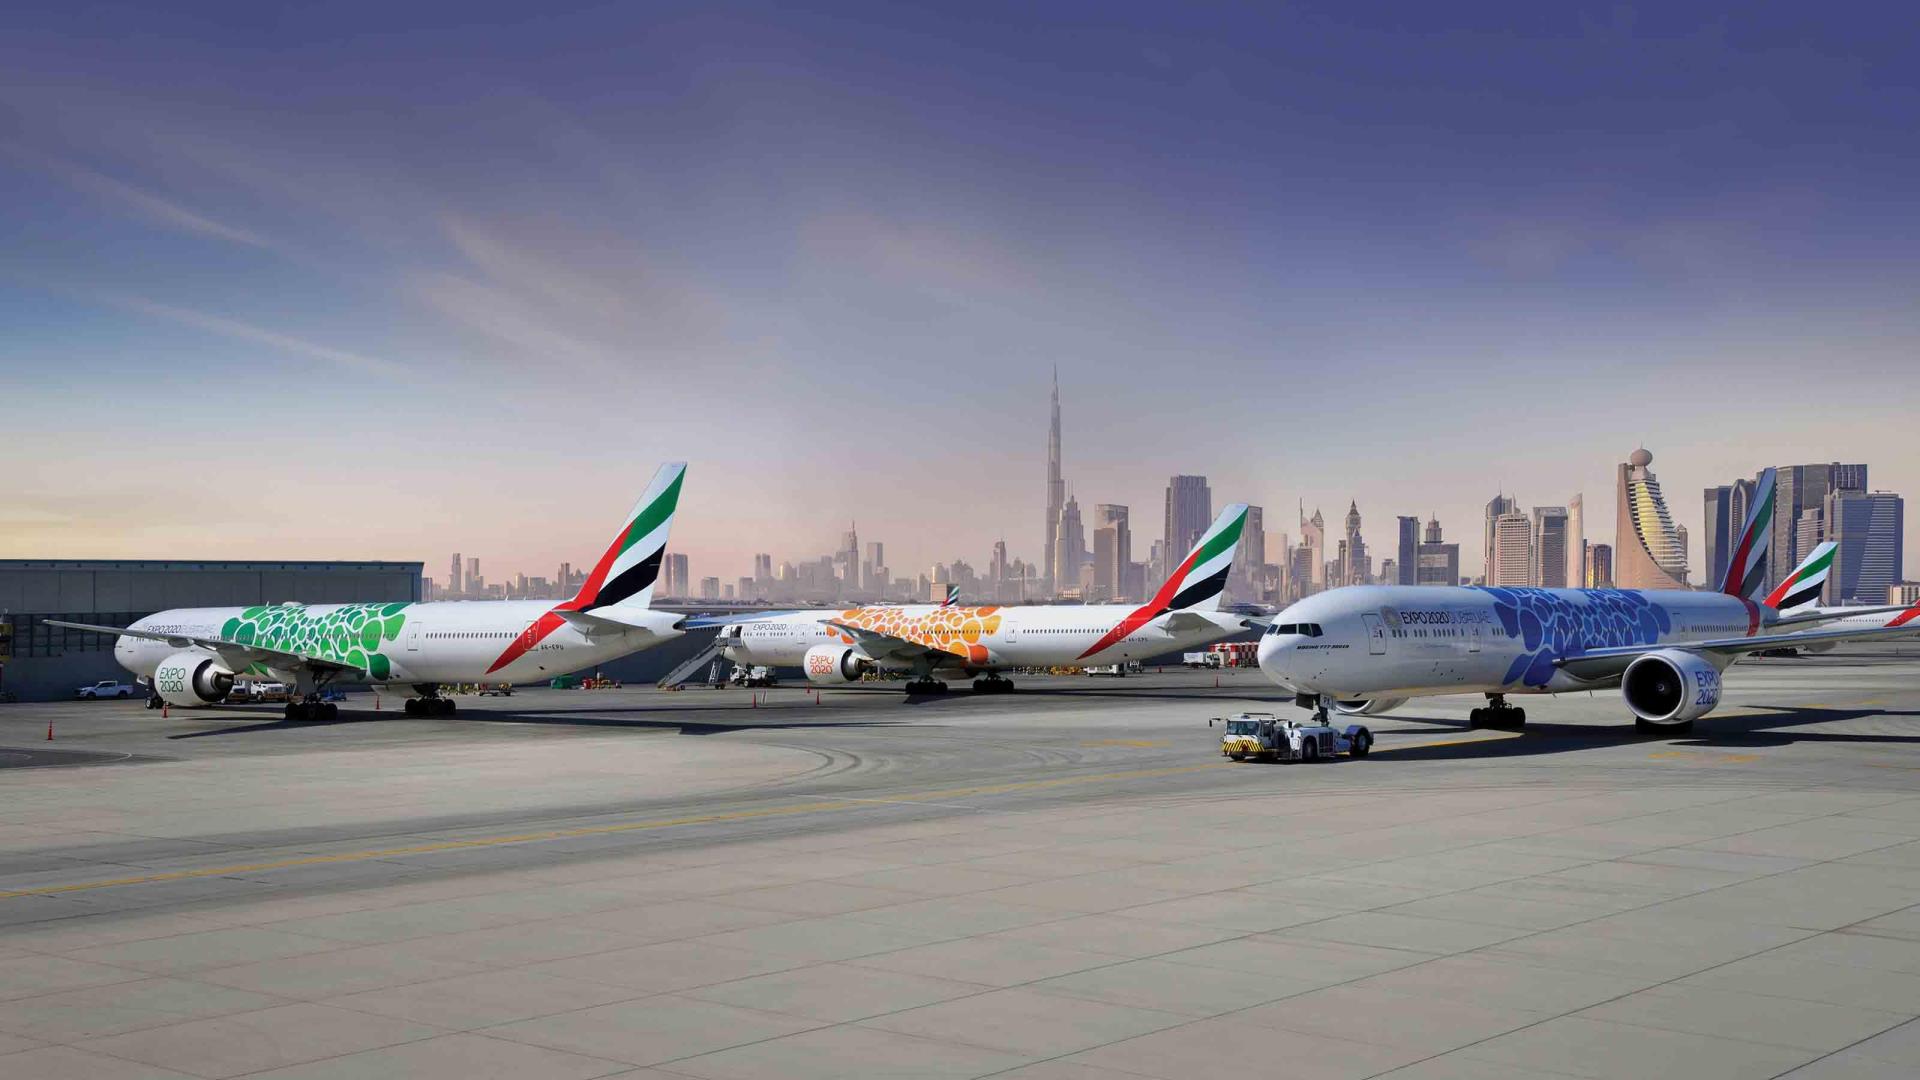 Emirates aircraft at Dubai airport